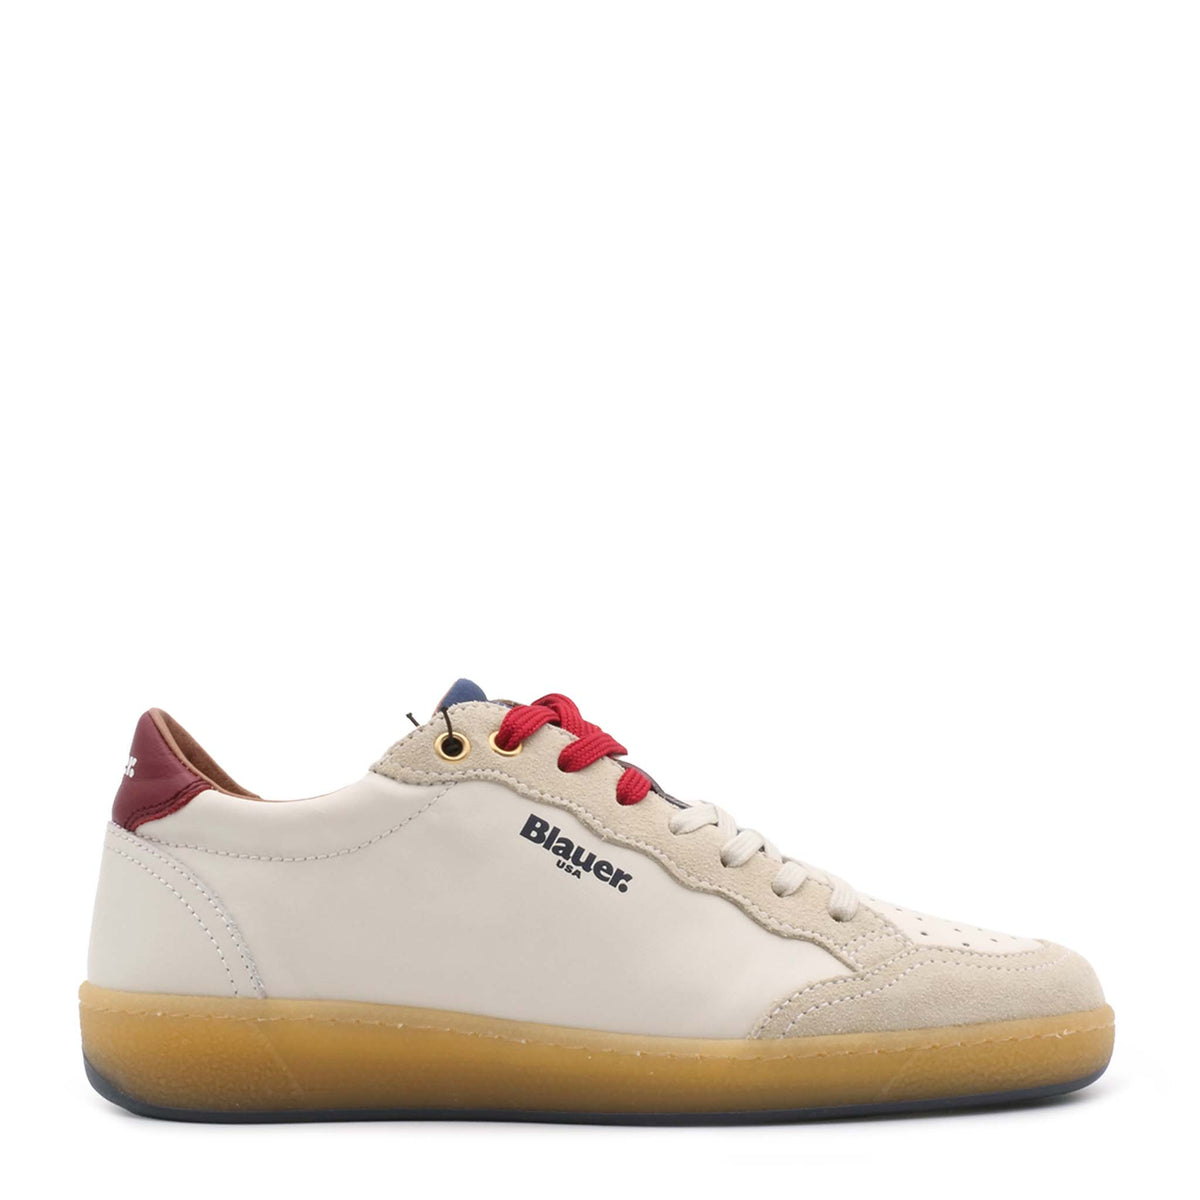 Sneaker BLAUER MURRAY01 White/Red/Navy - Sergio Fabbri